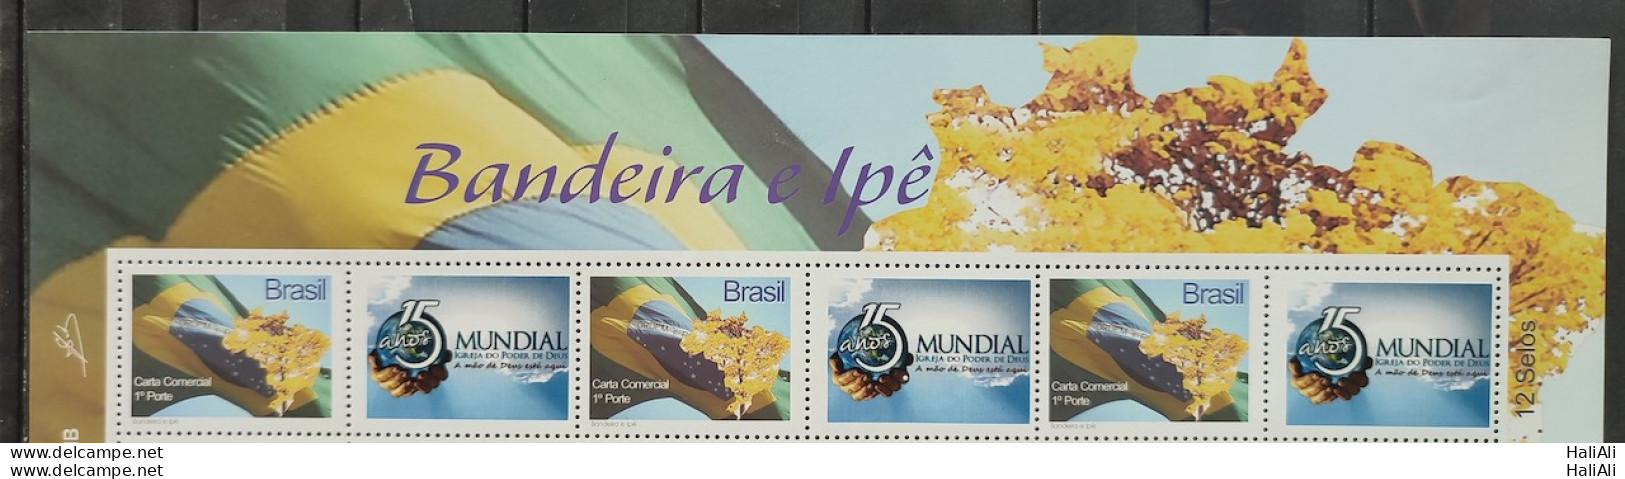 C 2853 Brazil Personalized Stamp Tourism Ipe Flag Church Religion 2009 Vignette 3 Units - Personnalisés